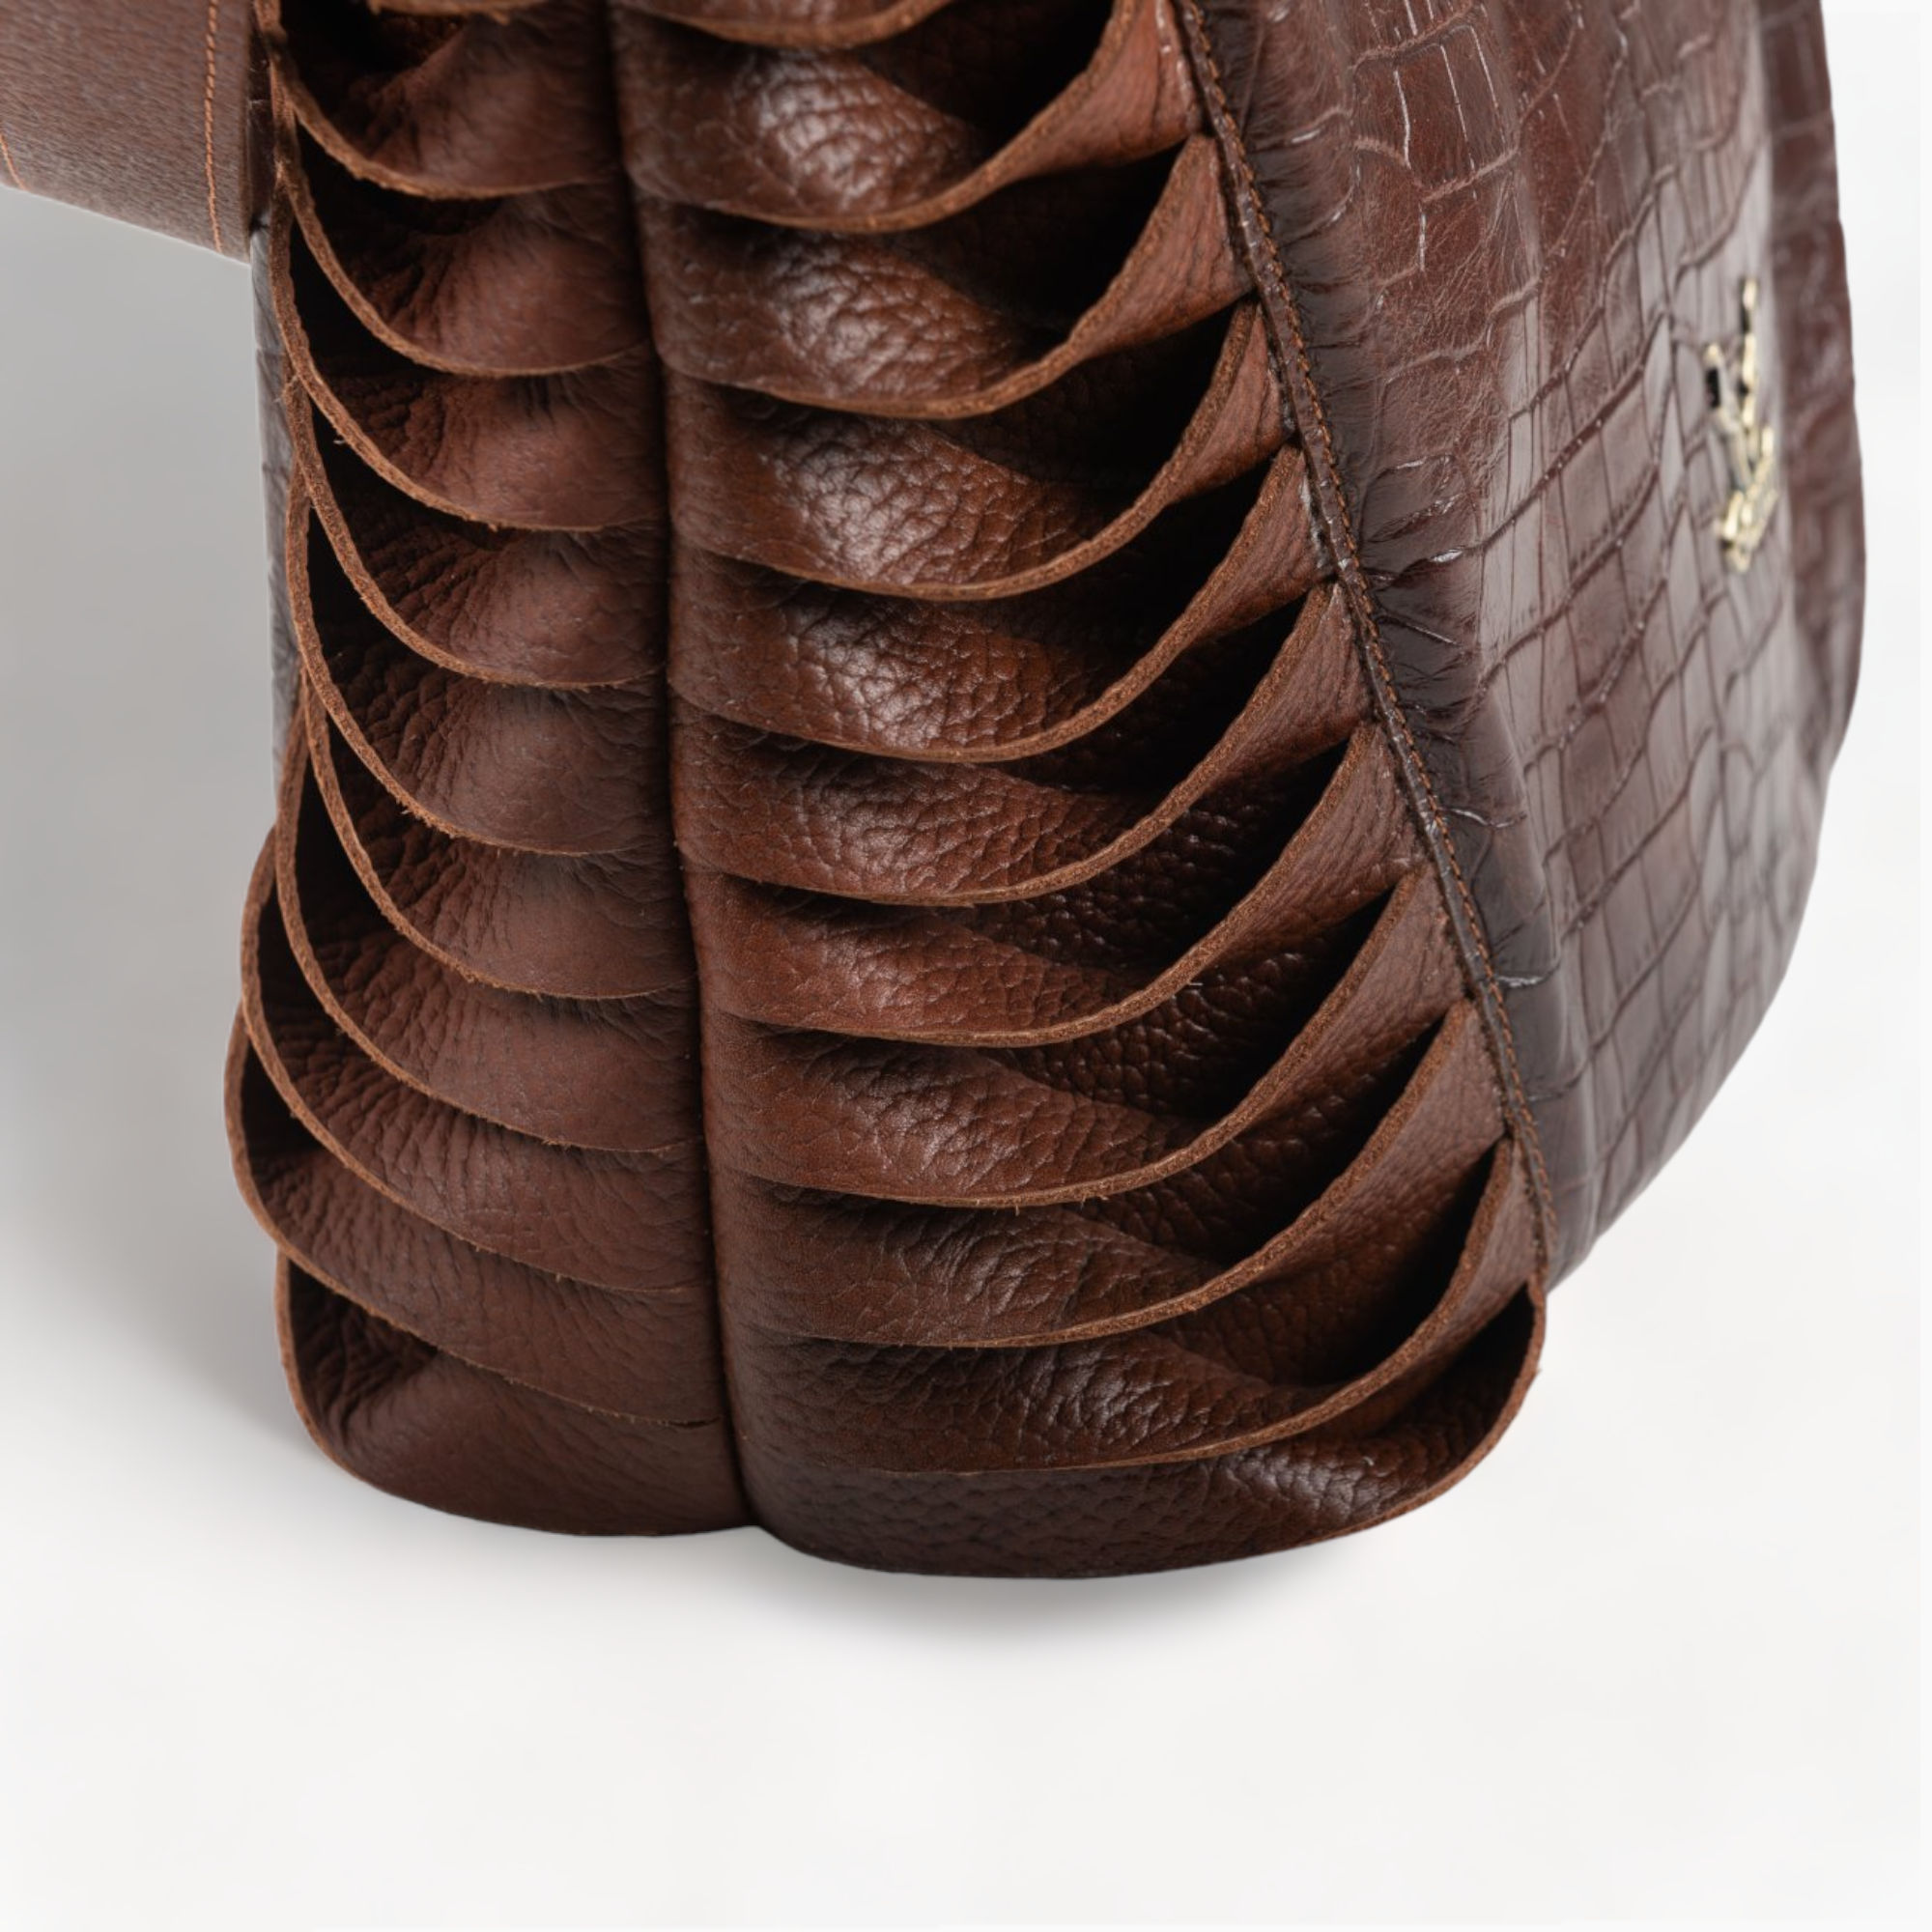 Leather shoulder bag in brown color